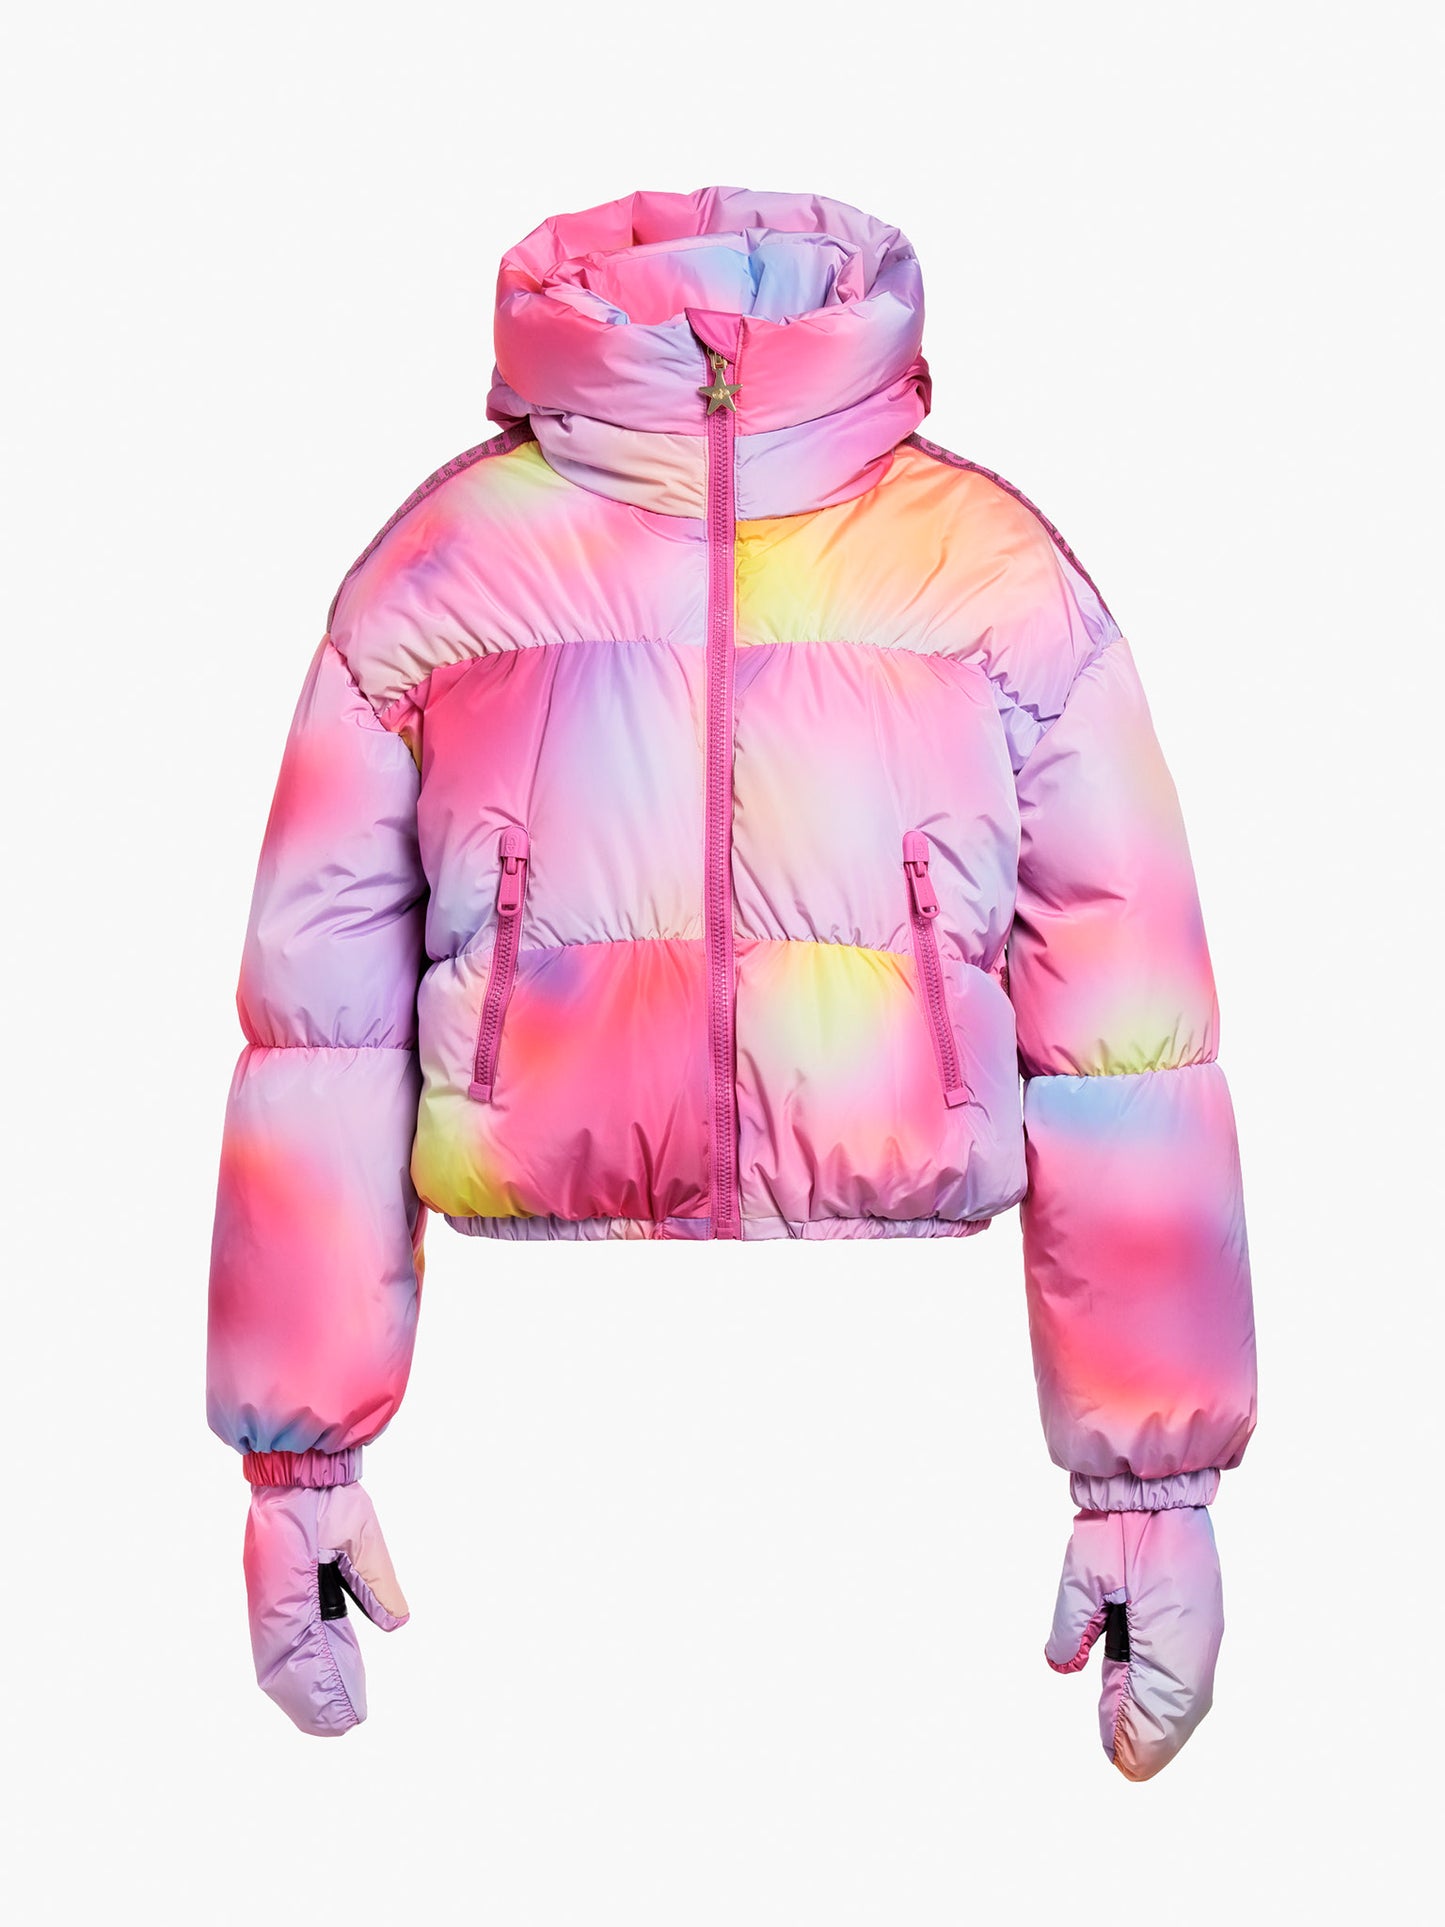 LUMINA ski jacket